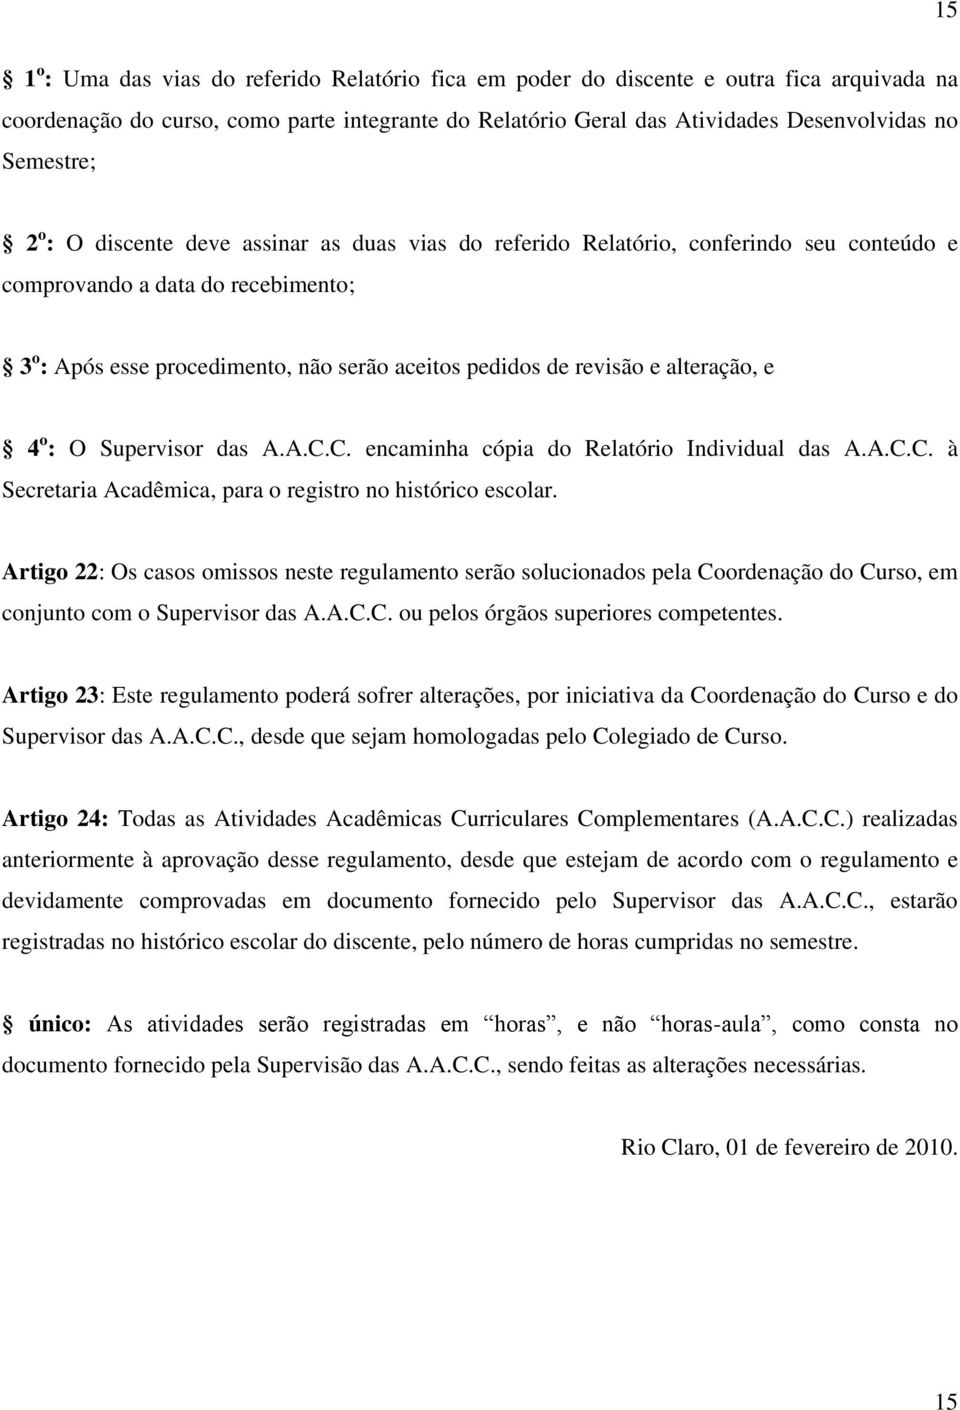 revisão e alteração, e 4 o : O Supervisor das A.A.C.C. encaminha cópia do Relatório Individual das A.A.C.C. à Secretaria Acadêmica, para o registro no histórico escolar.